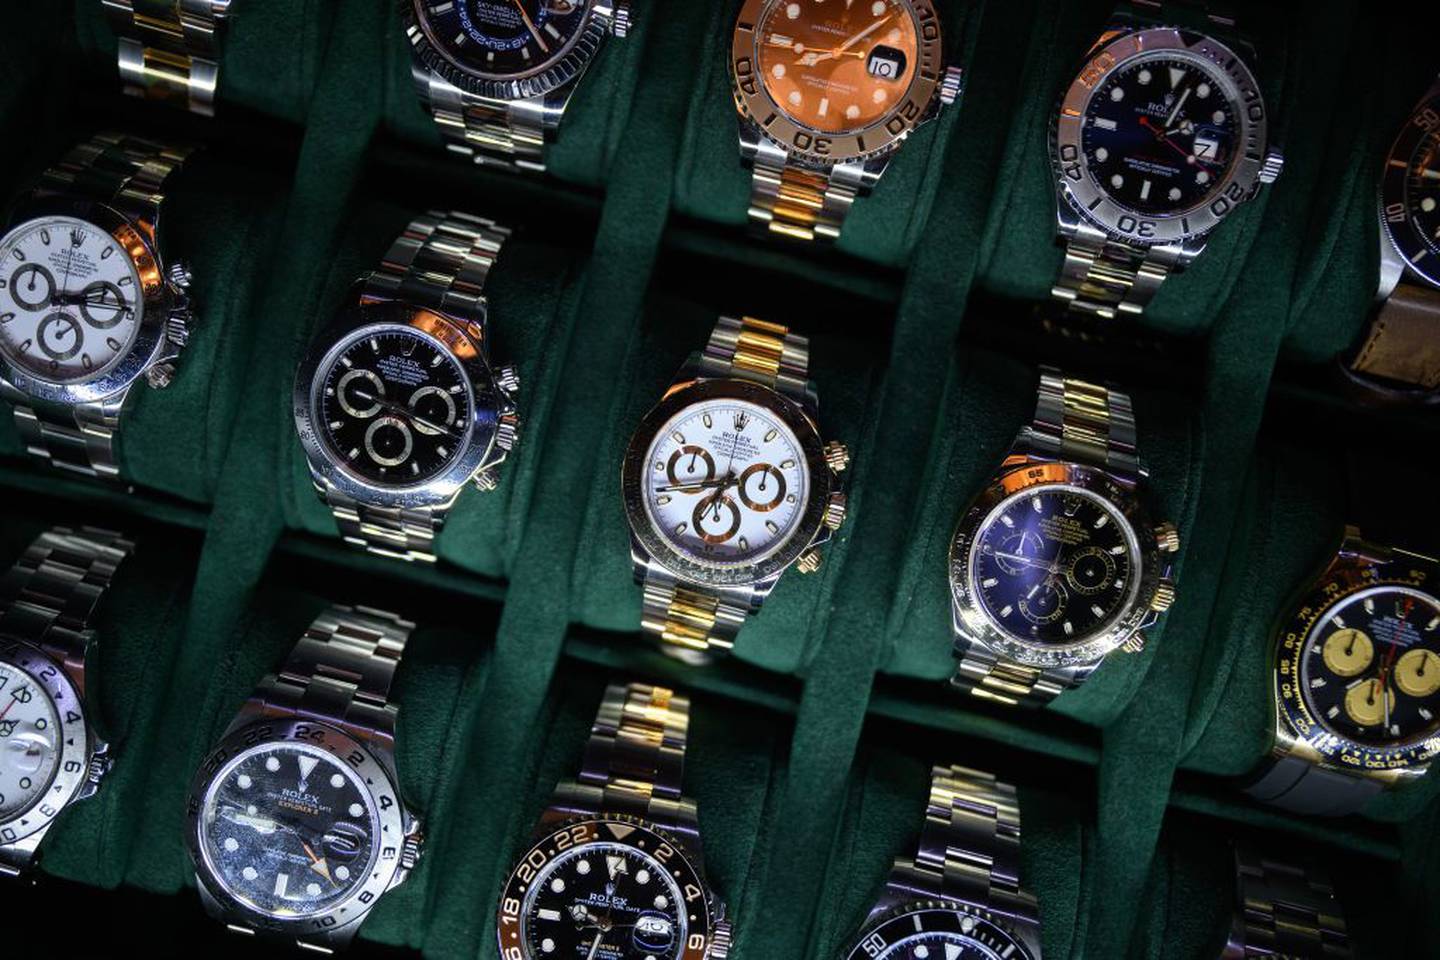 Una bandeja de relojes Rolex en el stand de un distribuidor en el London Watch Show el 19 de marzo de 2022 en Londres, Inglaterra.